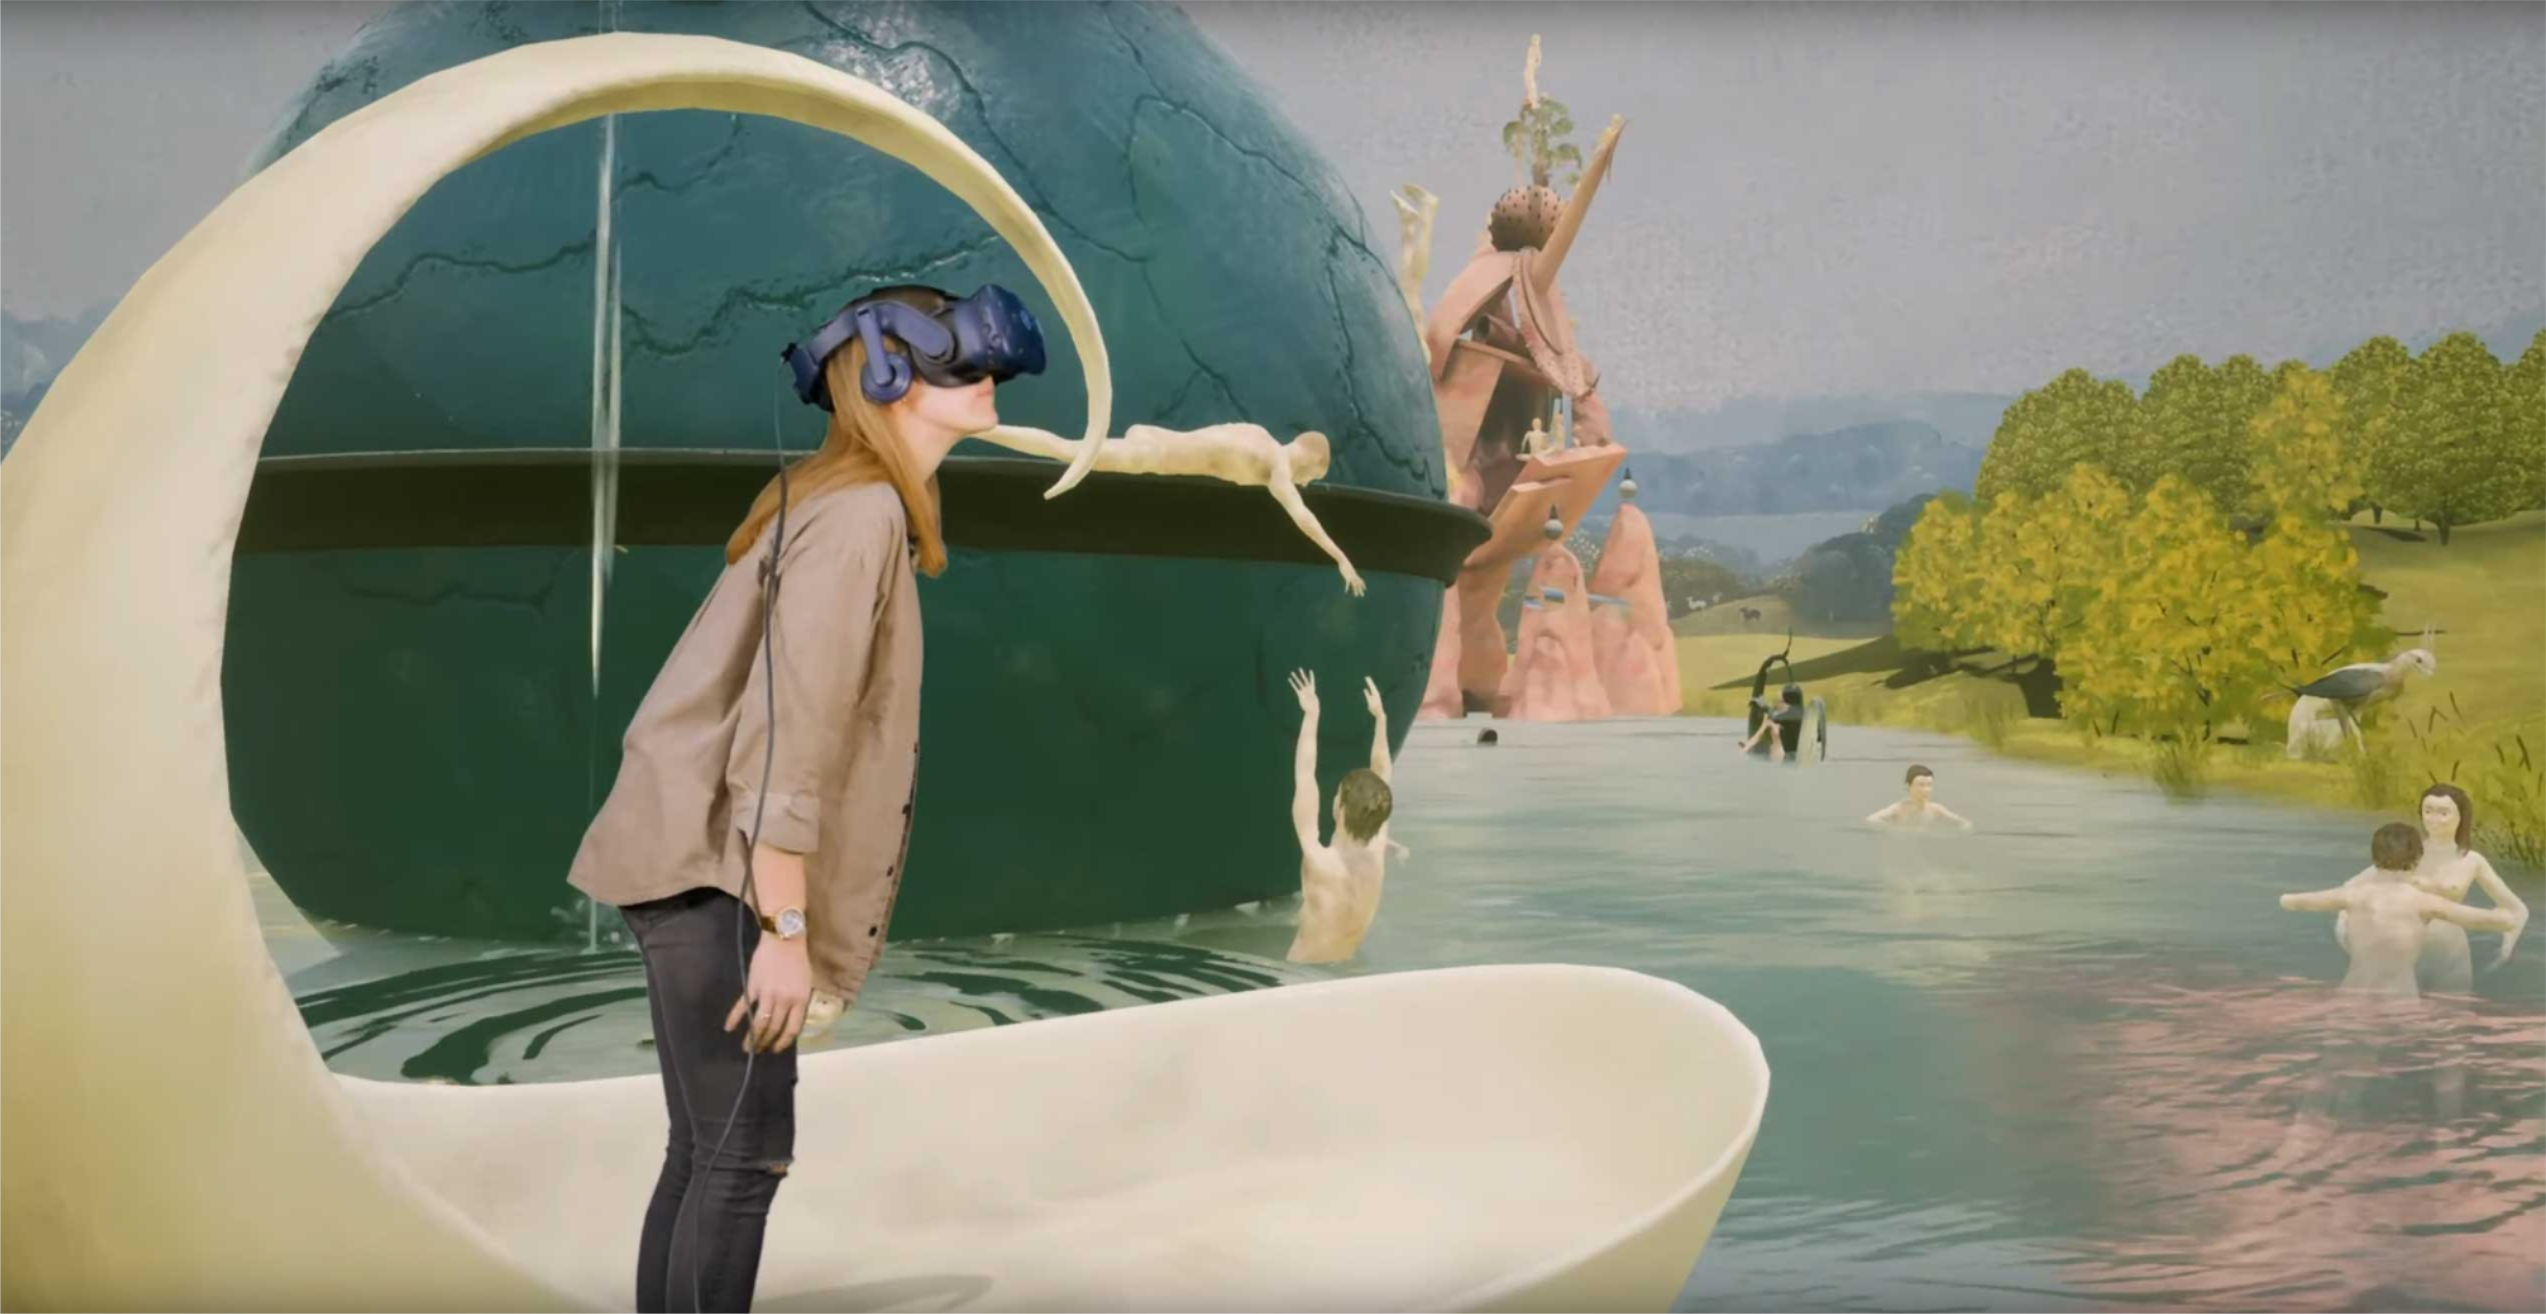 Virtulle Ansicht des Garten der Lüste von Hieronymus Bosch. Eine Frau steht auf einem virtuellen Boot und hat ein VR Headset auf und blickt nach rechts.